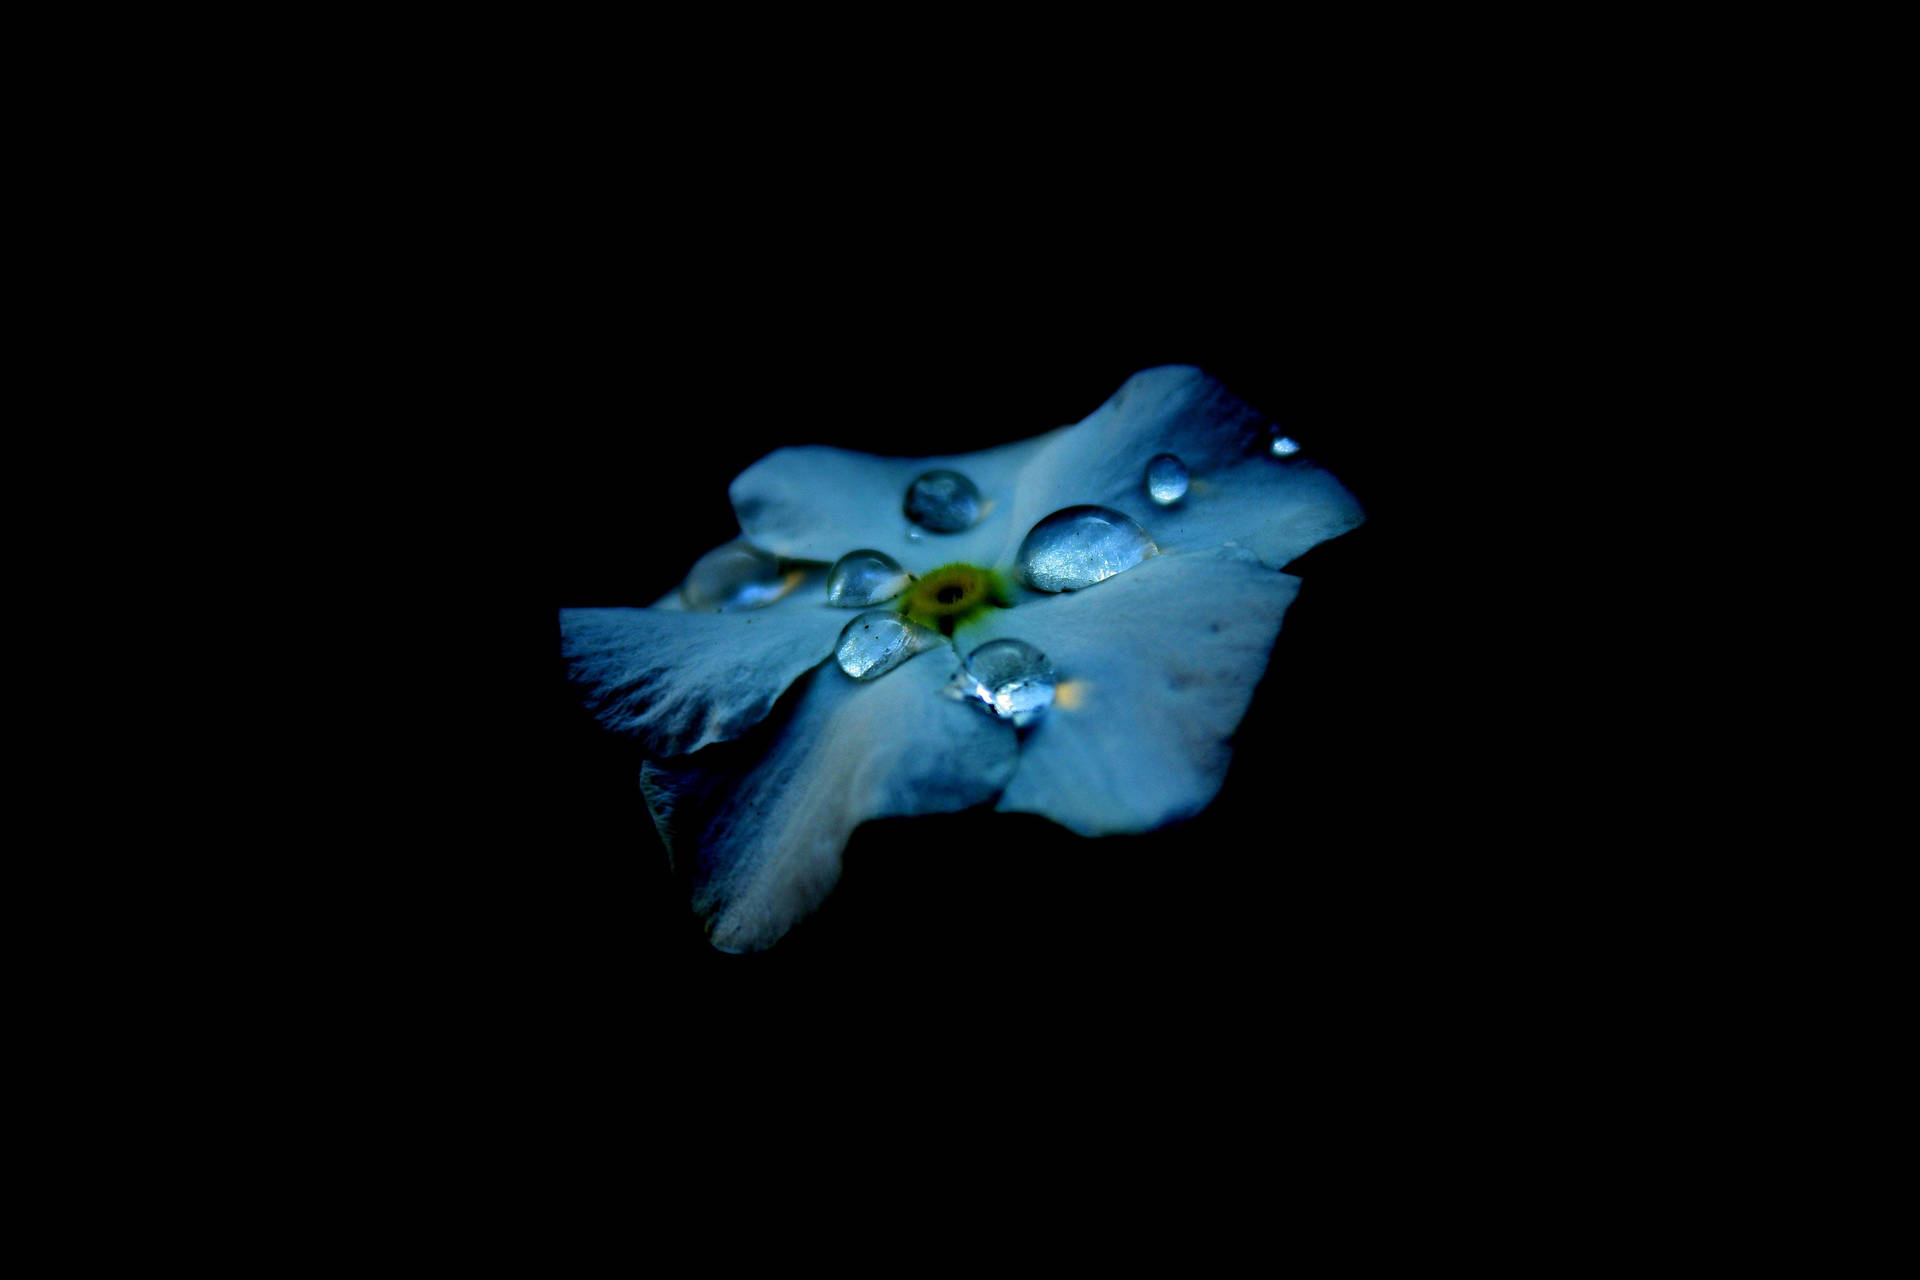 Super Amoled Flower Droplets